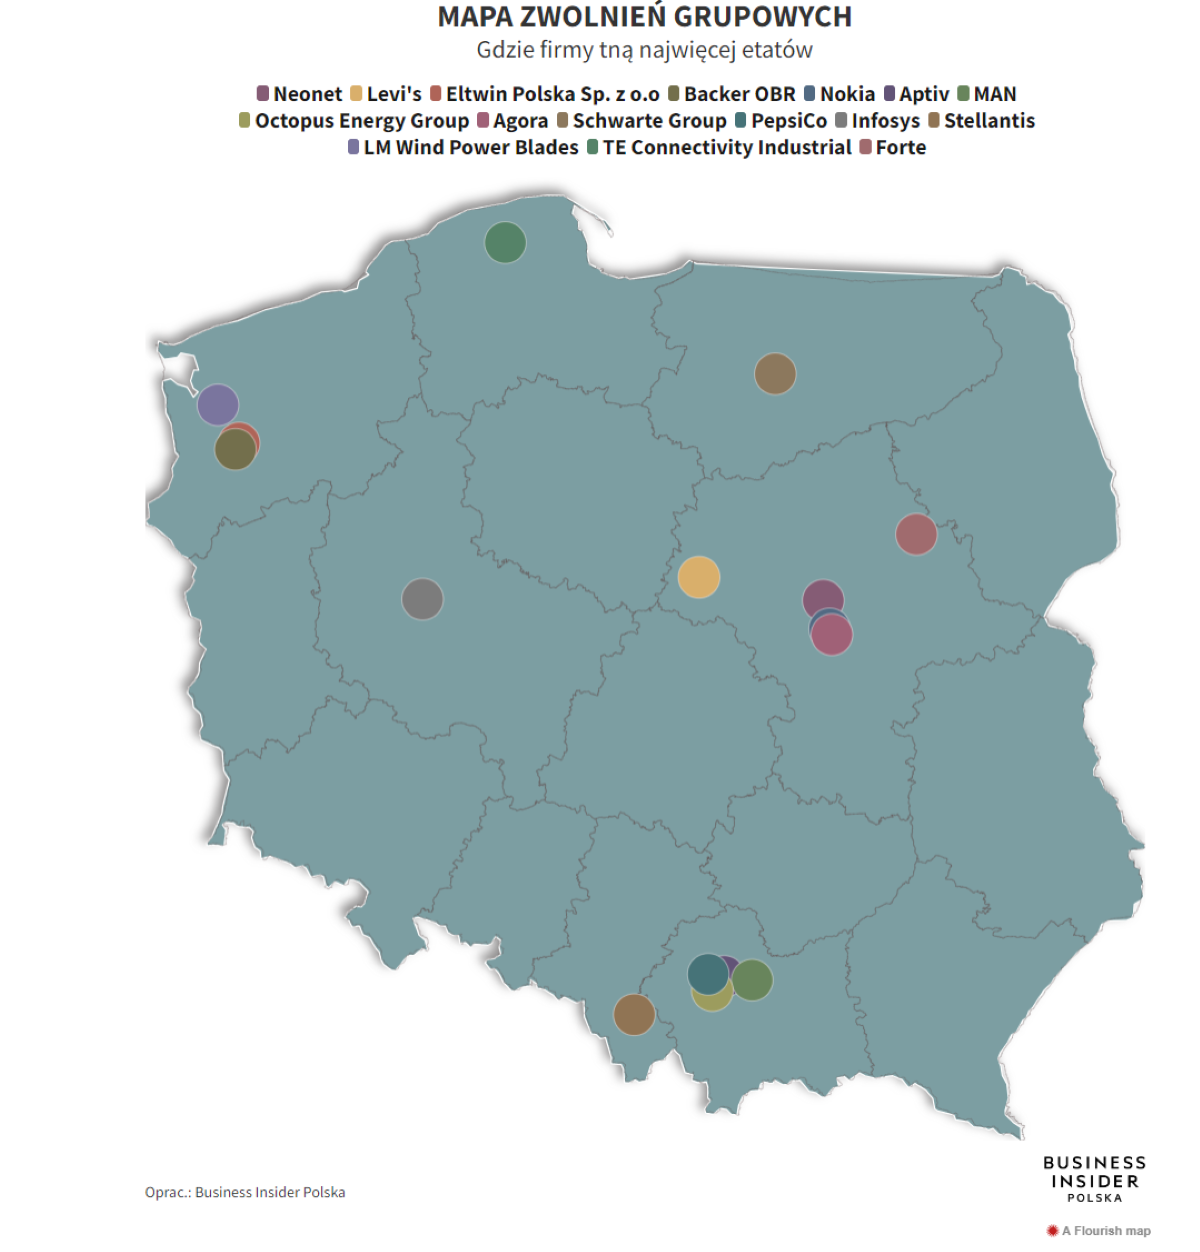 Mapa zawonień grupowych. Oprac. Busines Insider Polska